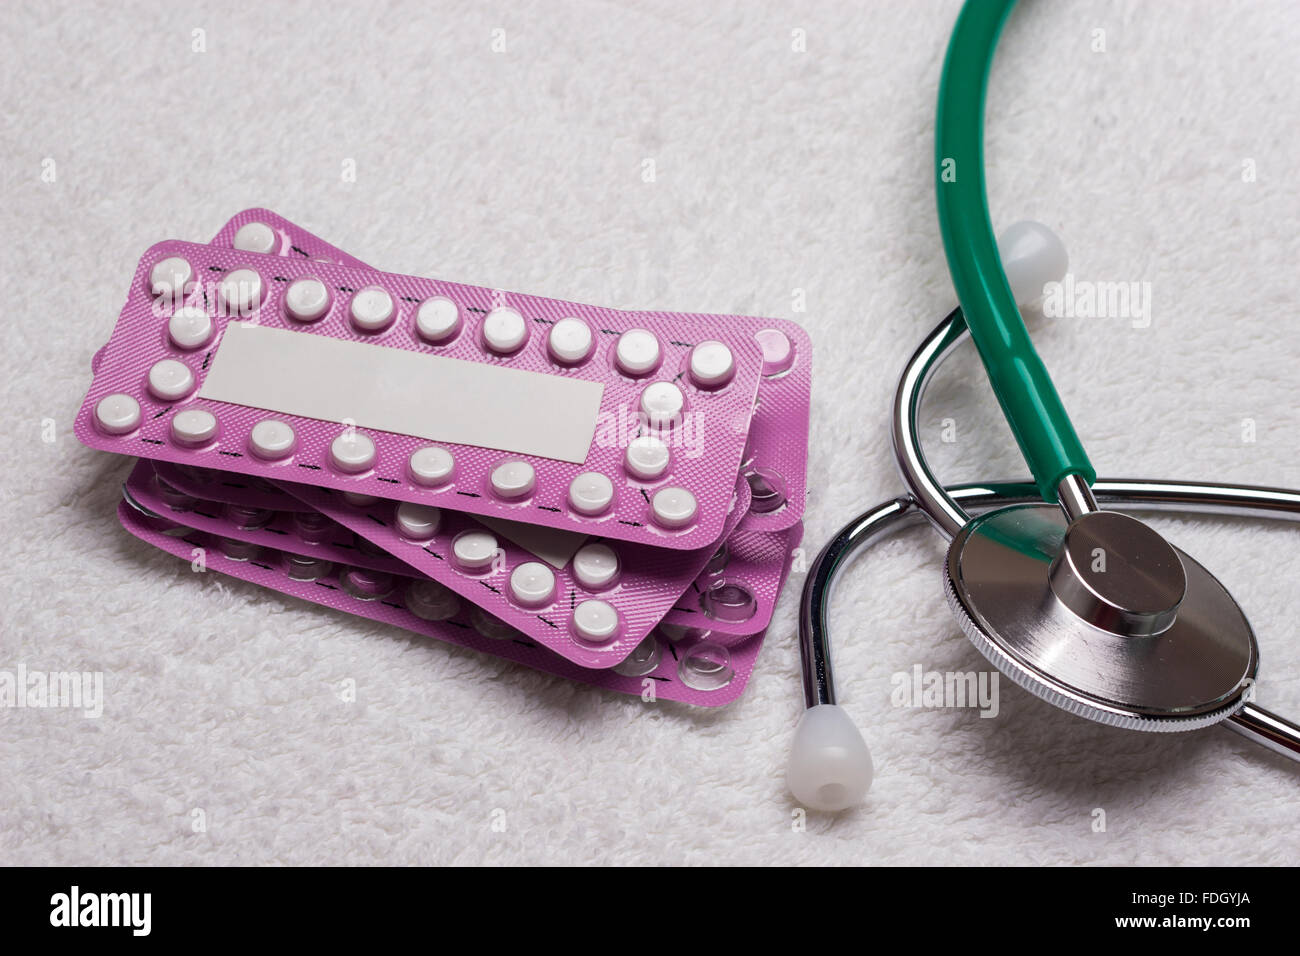 Medicine health care la contraception et le contrôle des naissances. Les pilules contraceptives orales, des ampoules avec les comprimés hormonaux Banque D'Images